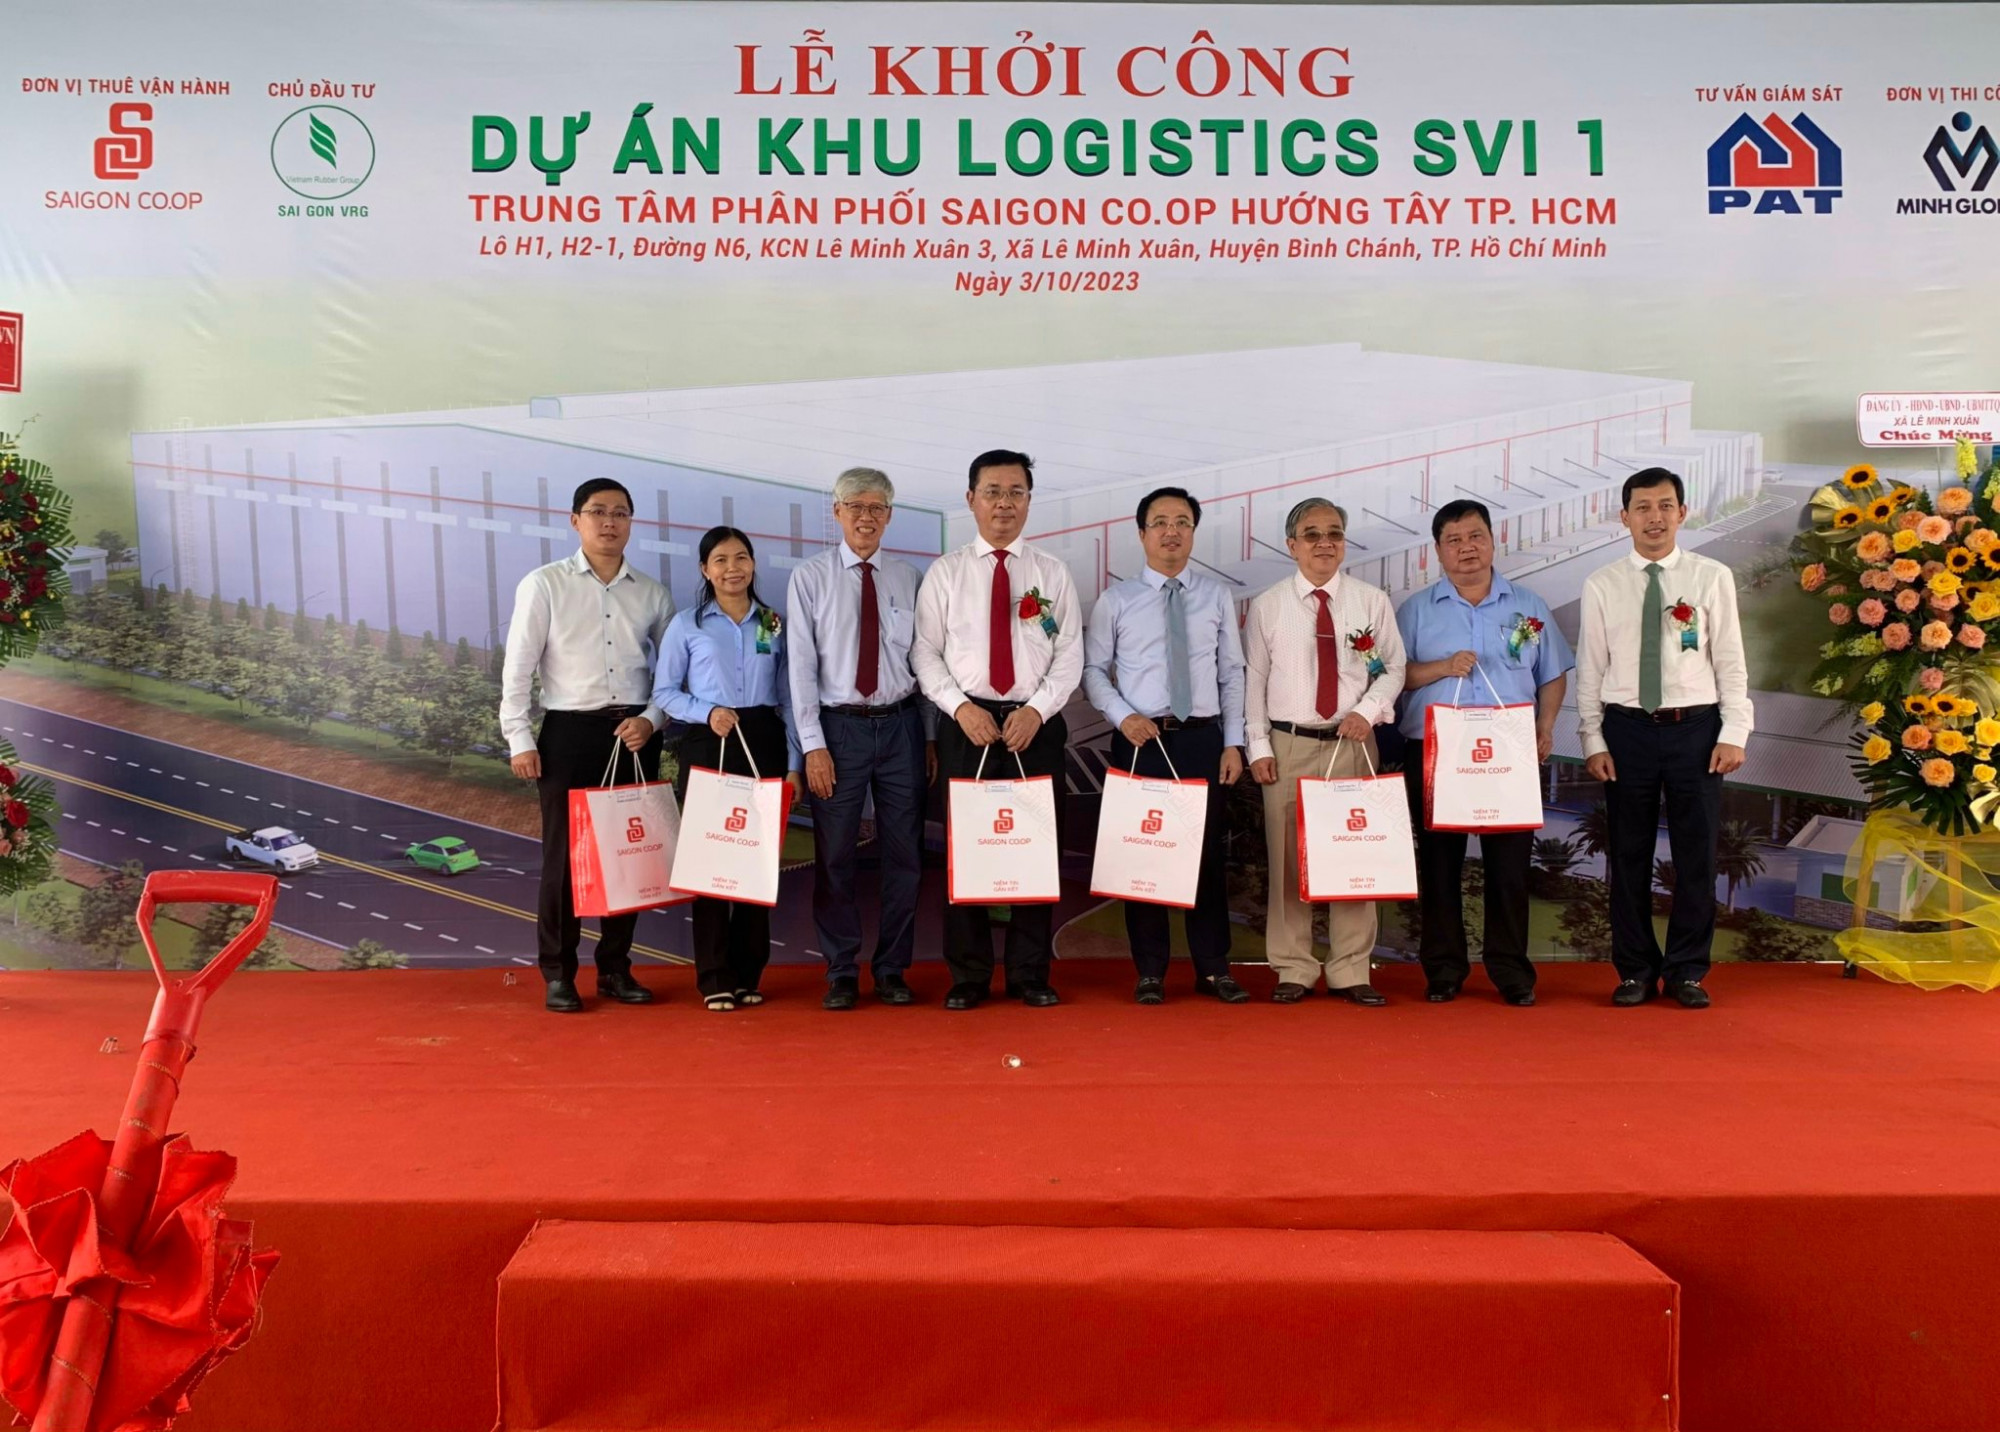 Ông Vũ Anh Khoa - Chủ tịch Hội đồng quản trị Saigon Co.op (ngoài cùng bên phải) trao quà lưu niệm cho các đại biểu tại buổi lễ - Ảnh: Saigon Co.op